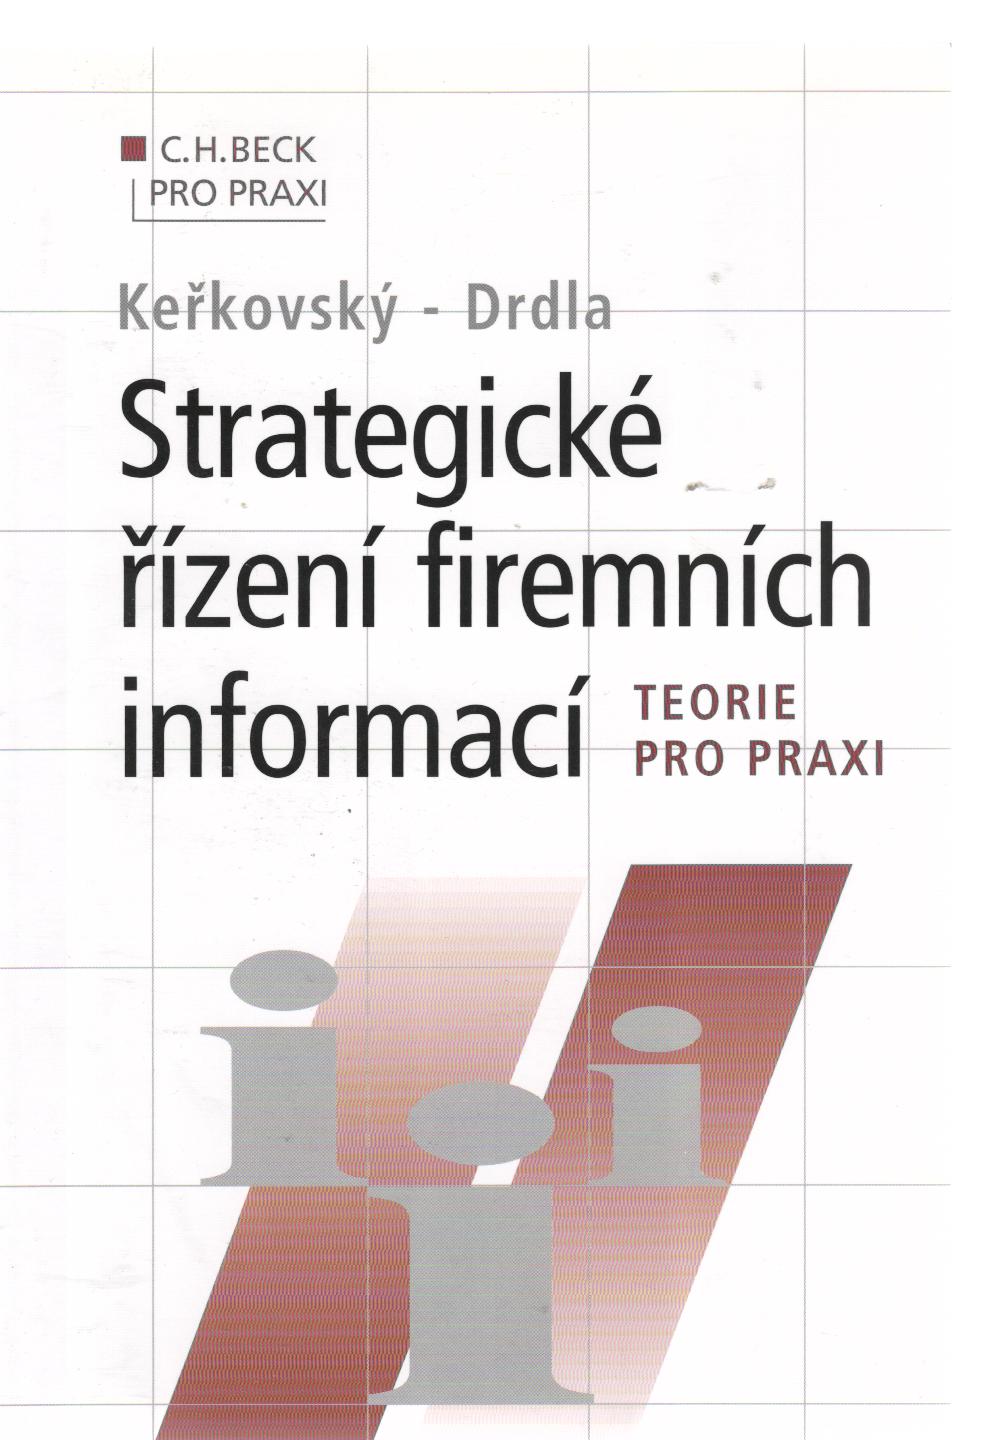 Strategické řízení firemních informací - teorie pro praxi